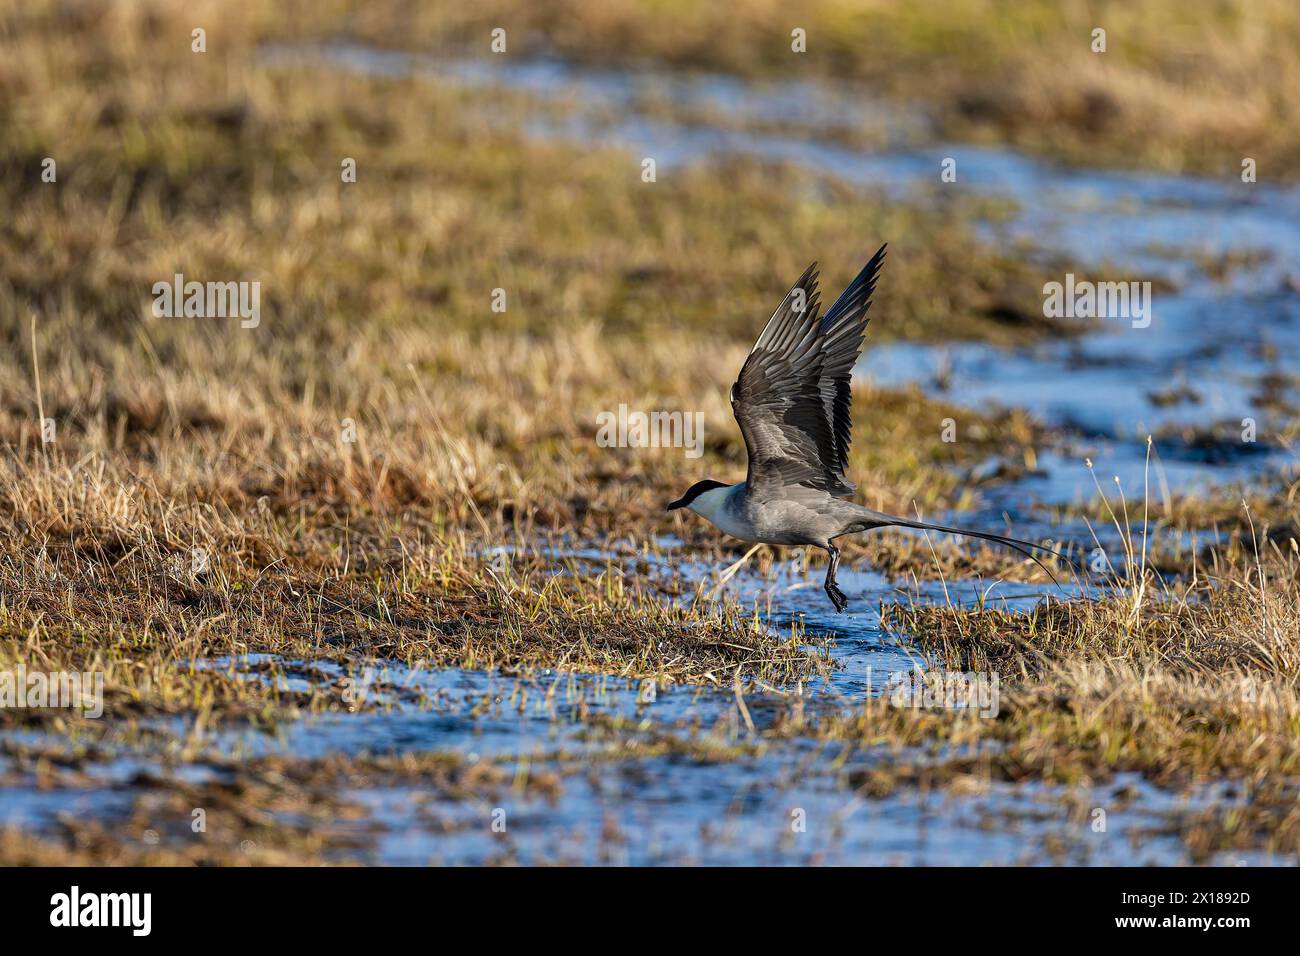 jaeger à longue queue (Stercorarius longicaudus), oiseau adulte dans un paysage de tourbières, Varanger, Finnmark, Norvège Banque D'Images